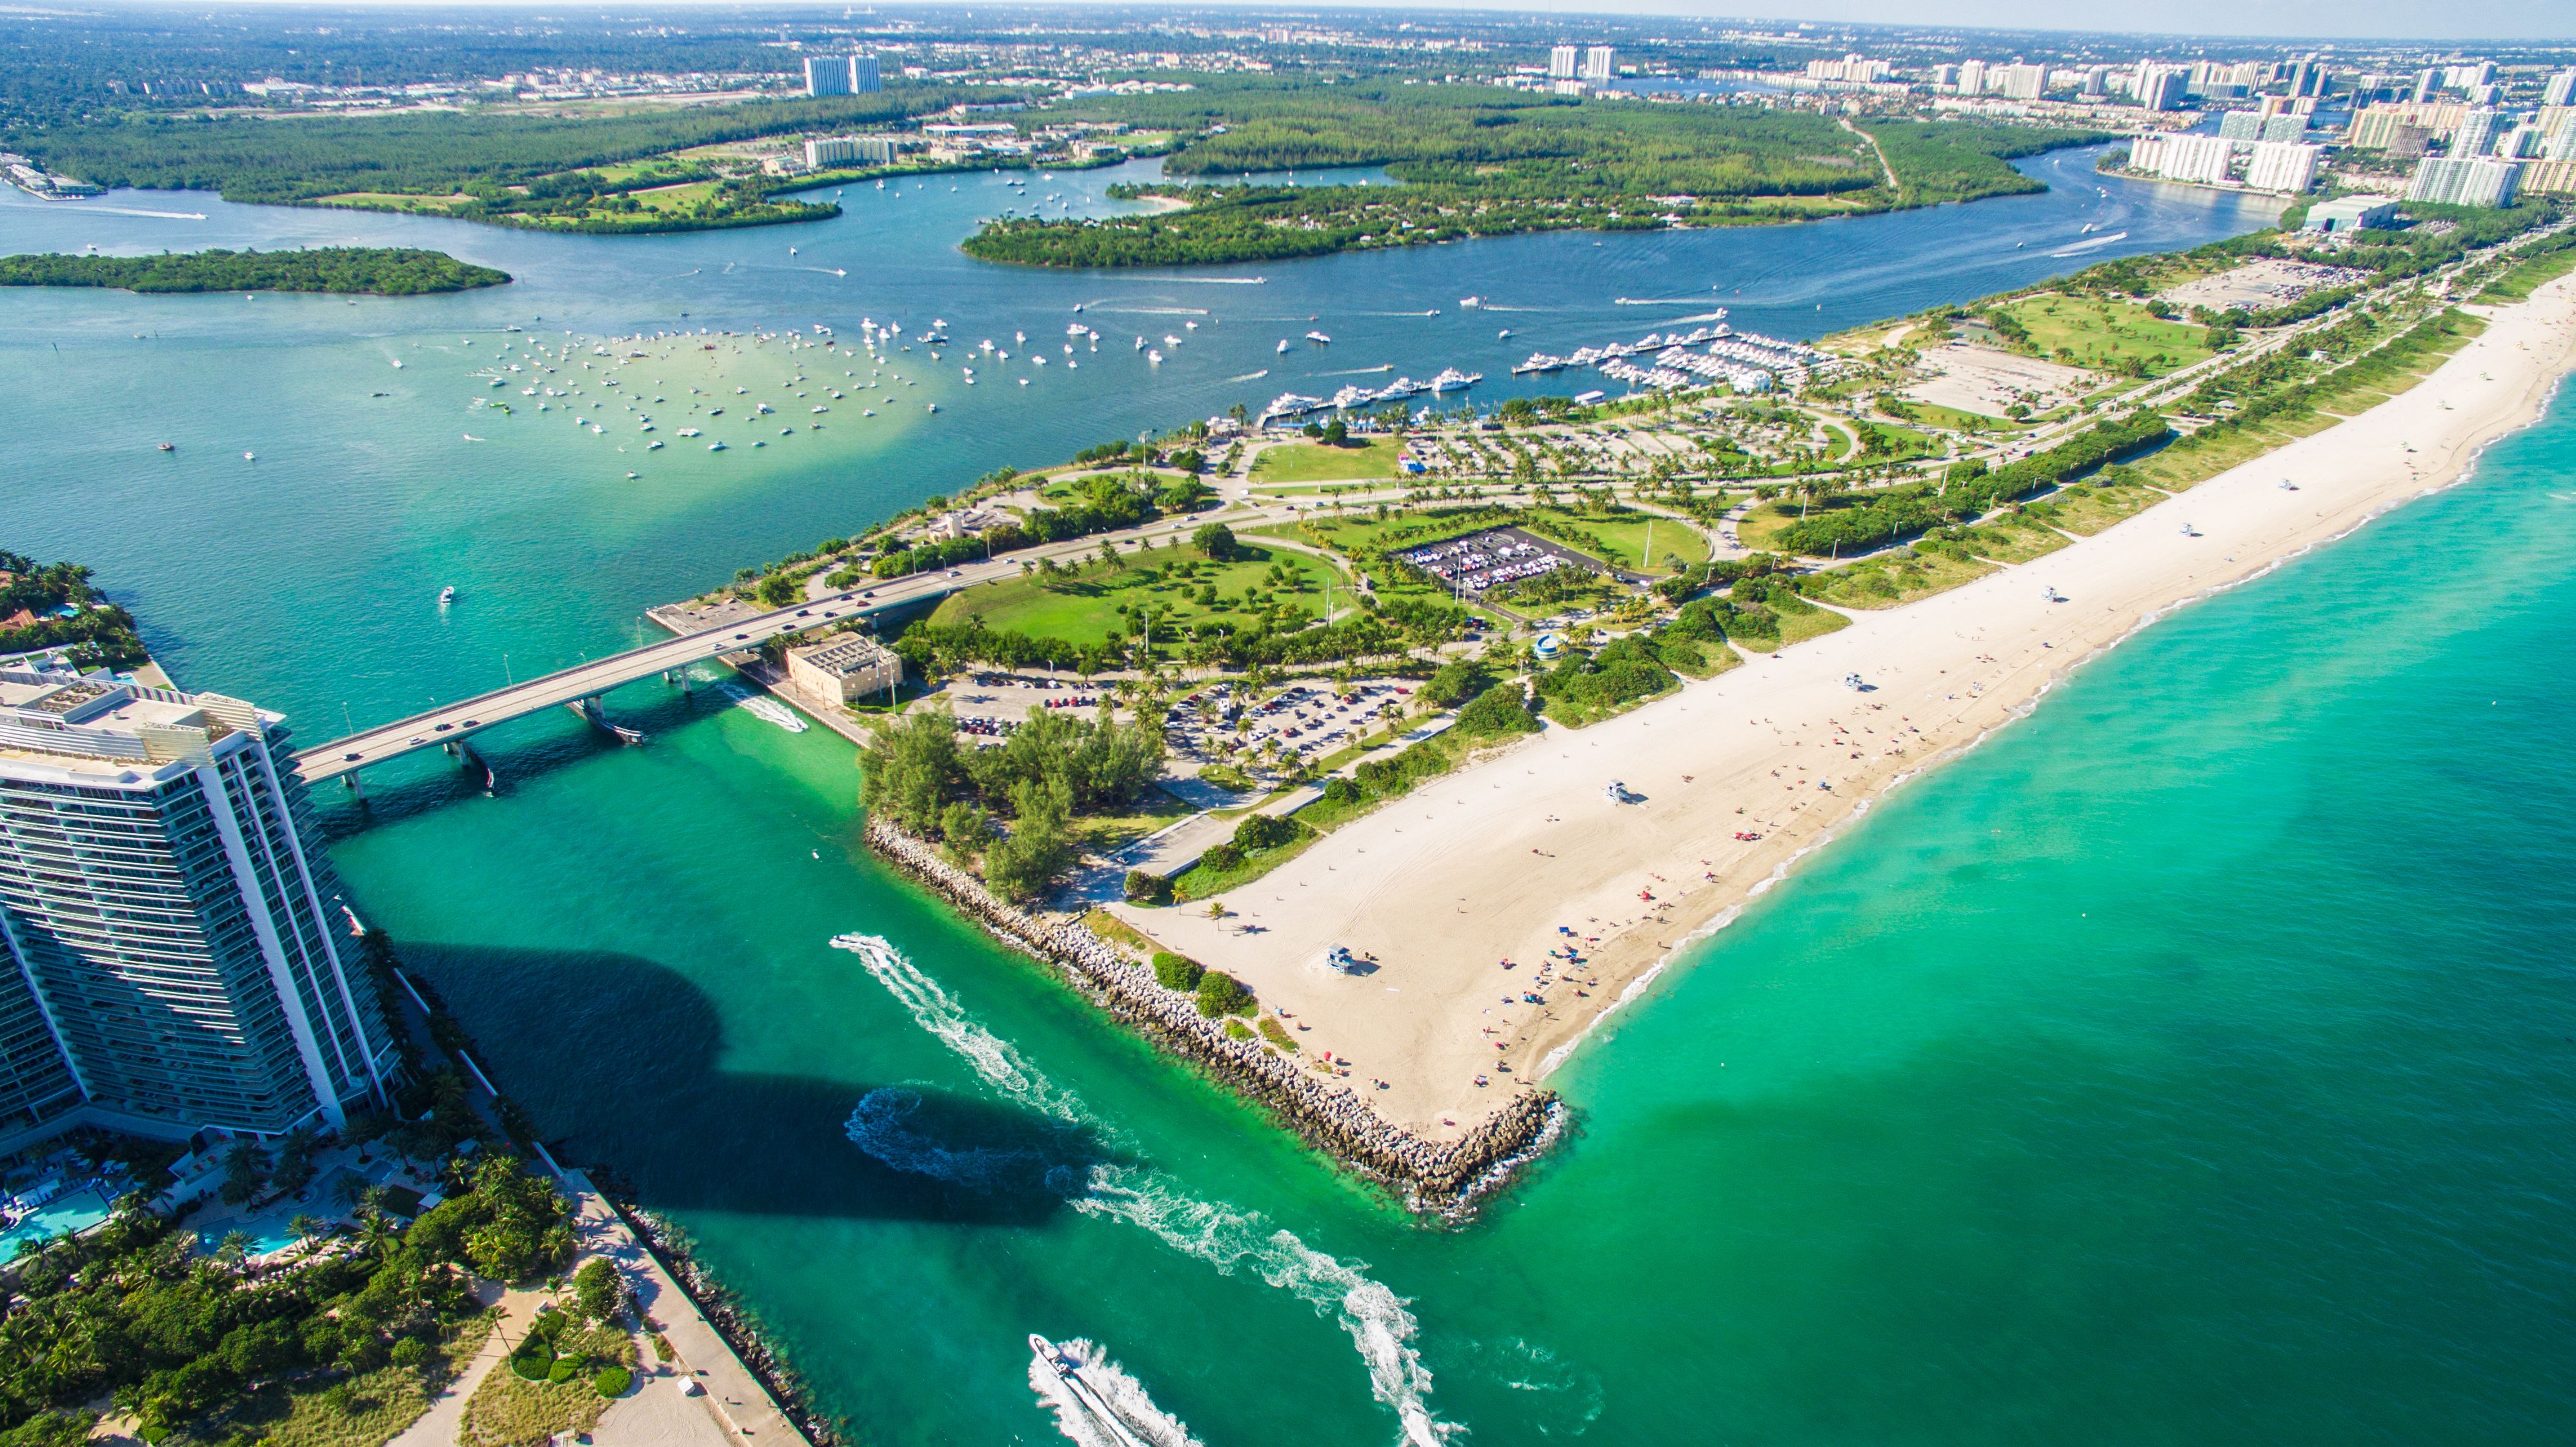 An aerial view of Haulover Park, Miami Beach